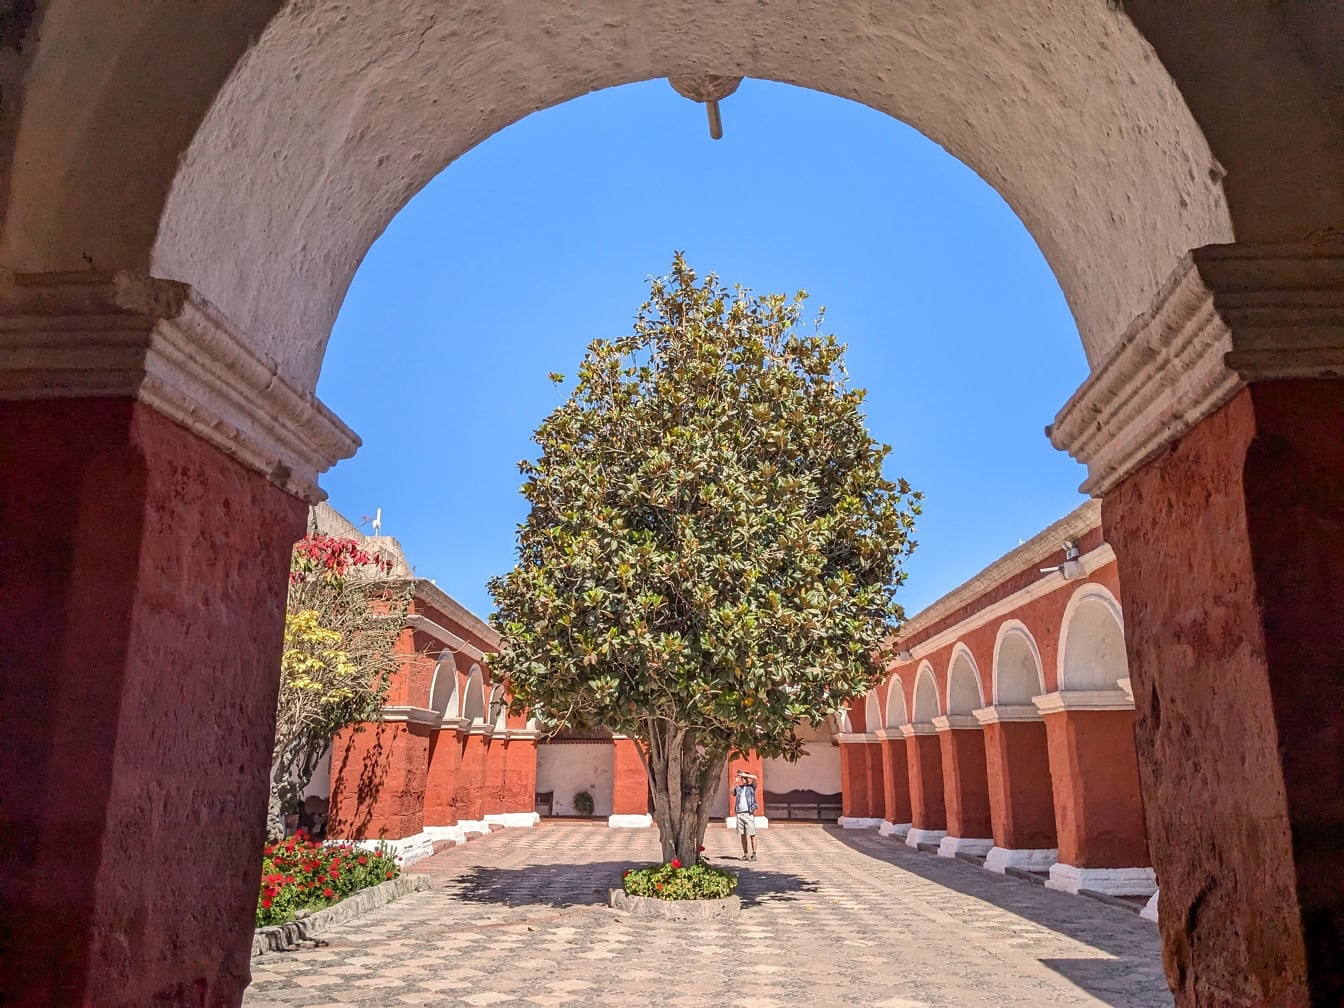 Drzewo na dziedzińcu klasztoru Santa Catalina de Siena w Arequipie w Peru, wpisanego na Listę Światowego Dziedzictwa UNESCO